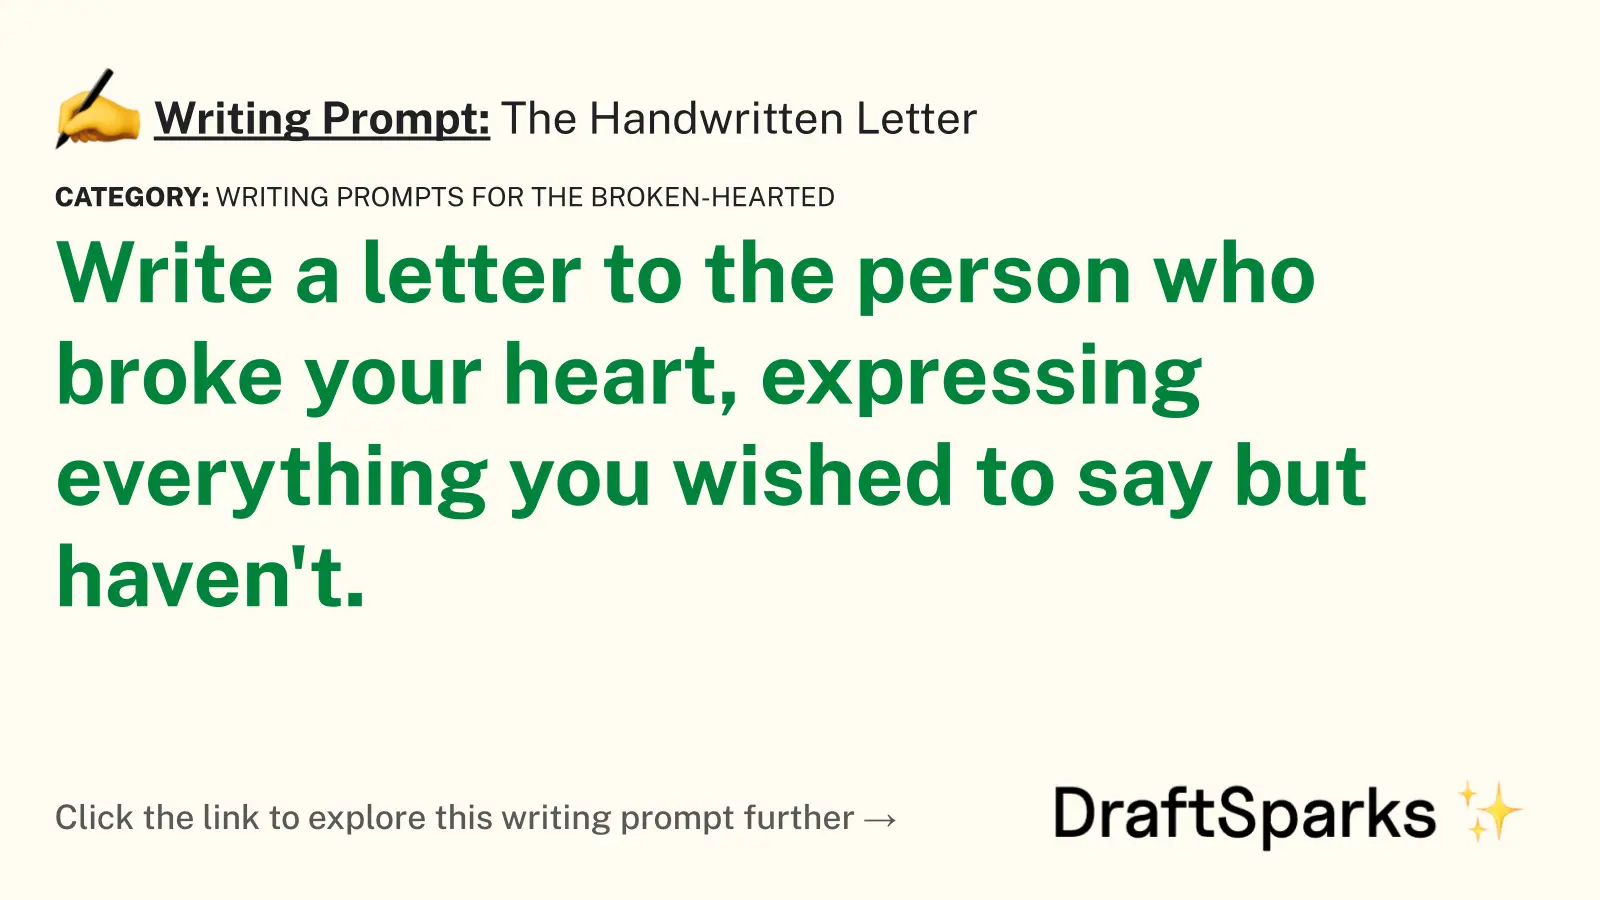 The Handwritten Letter